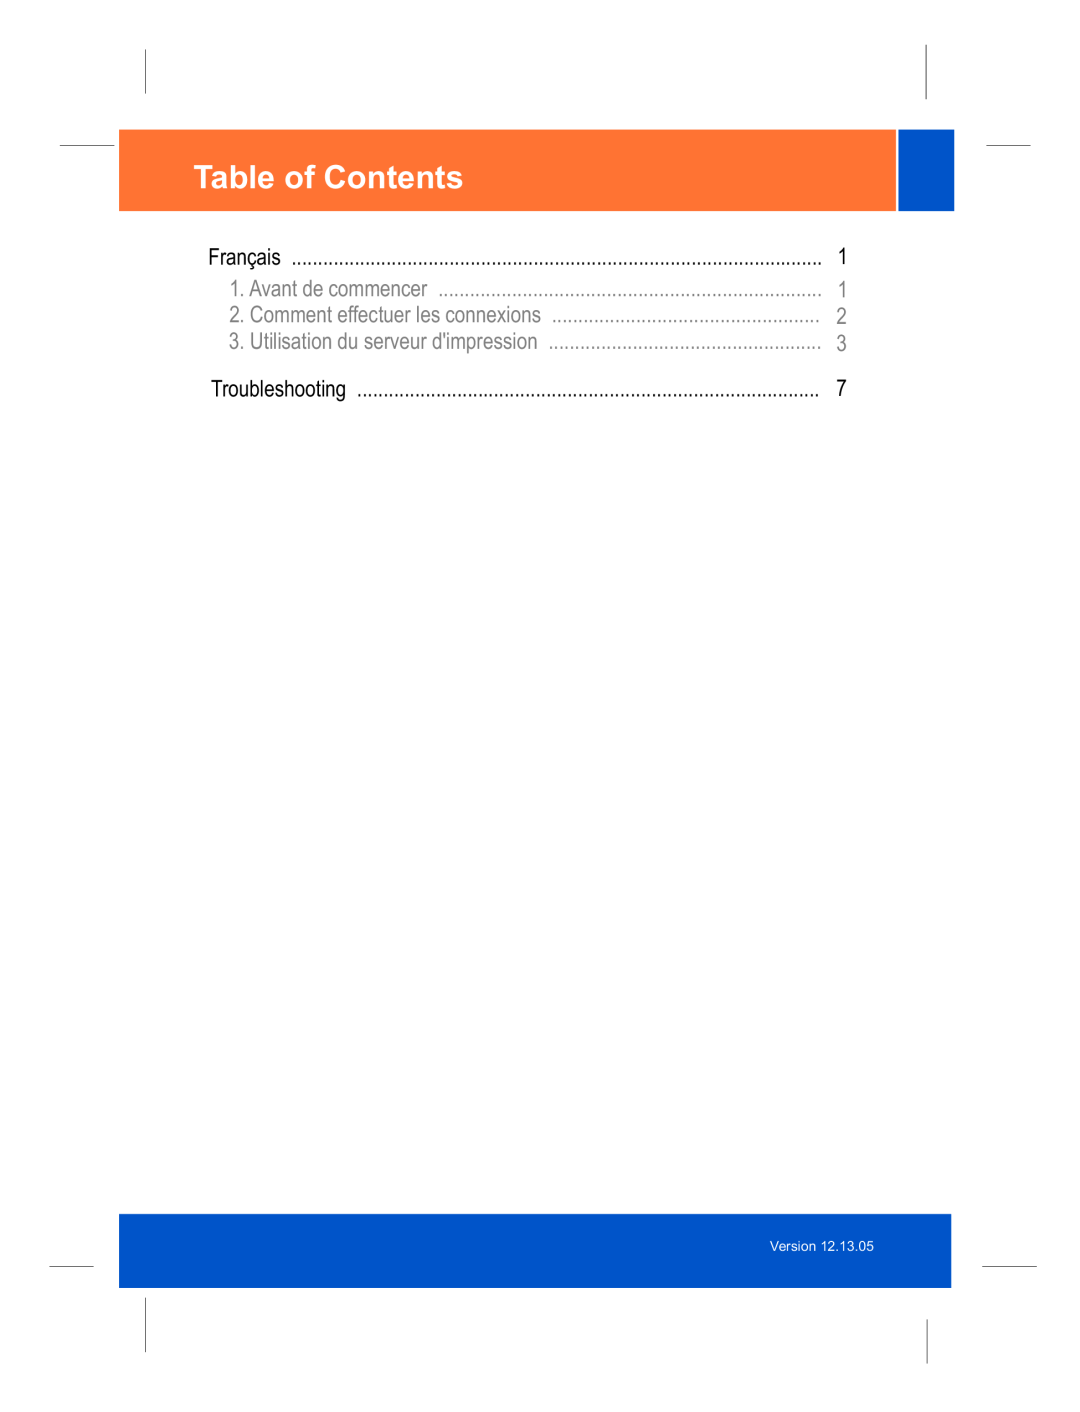 TRENDnet TEW-P21G manual Table of Contents, Français, Avant de commencer, Comment effectuer les connexions, Troubleshooting 